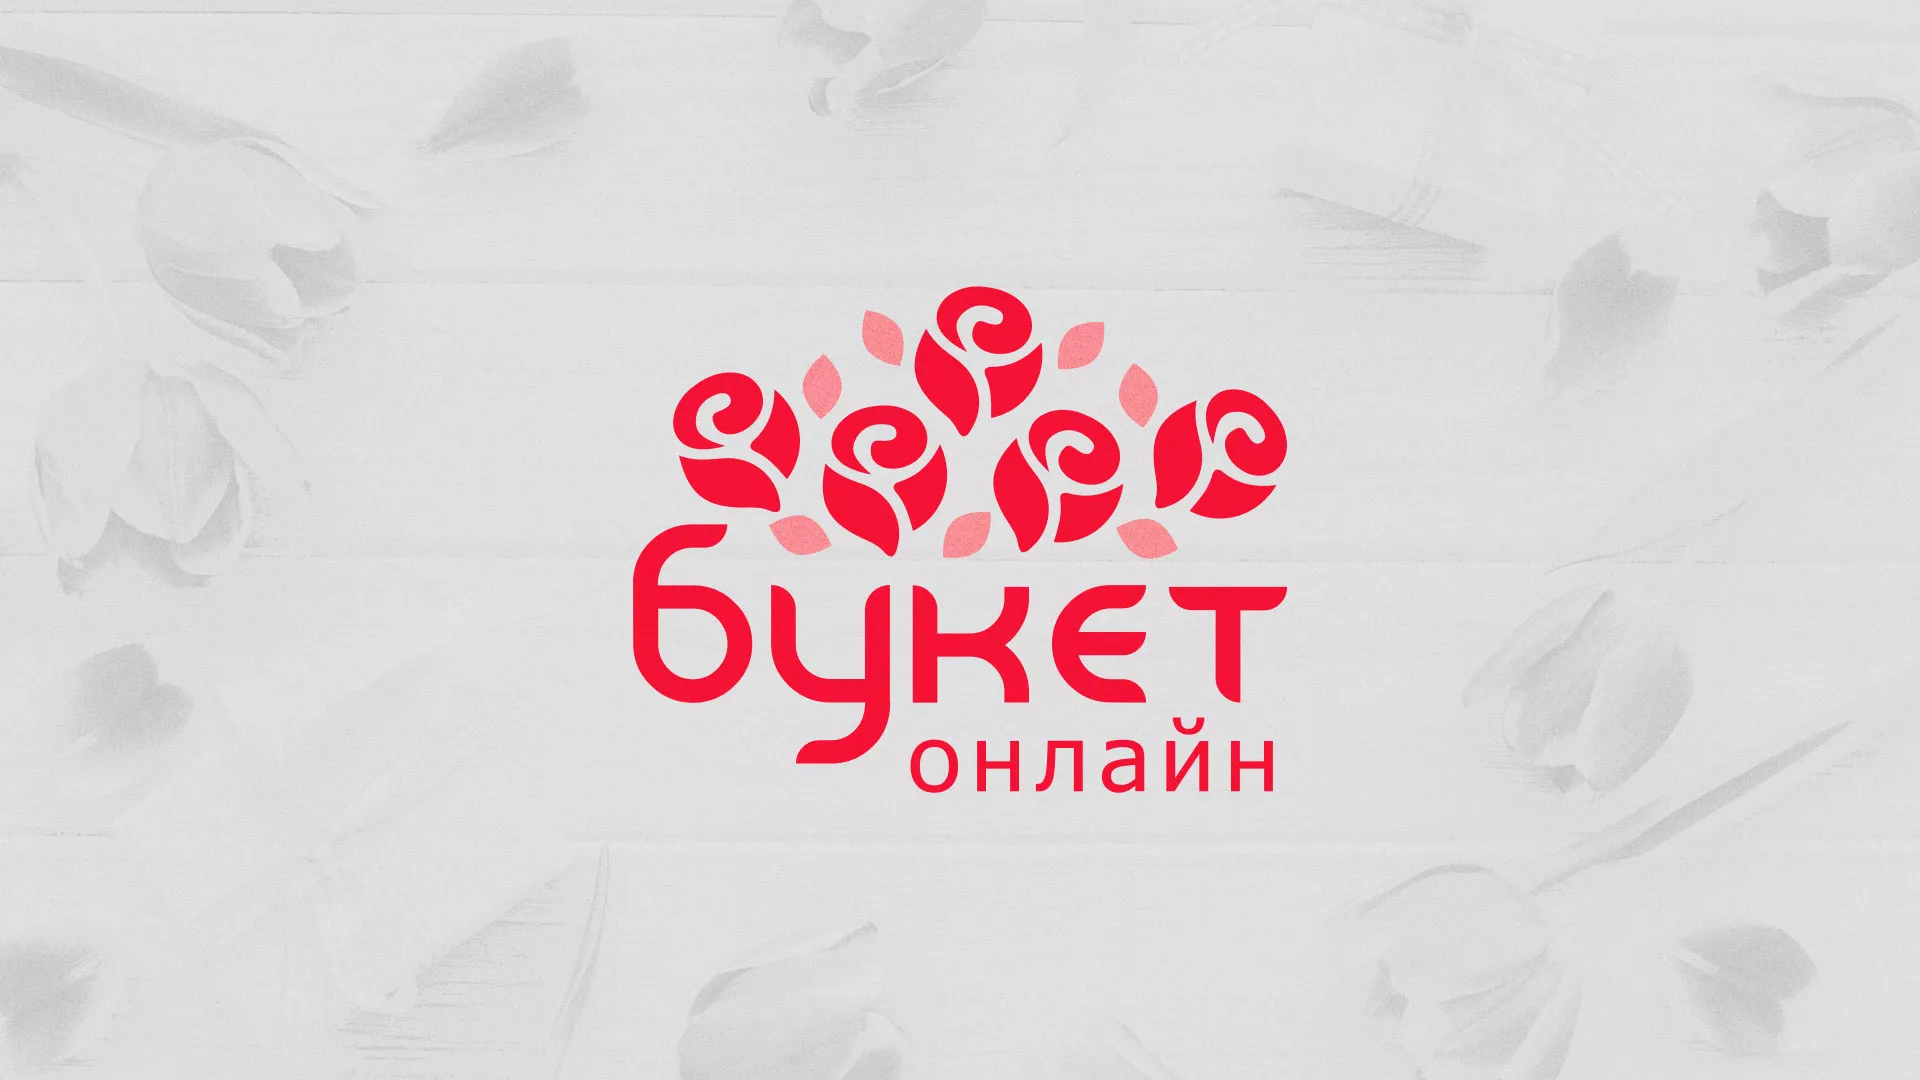 Создание интернет-магазина «Букет-онлайн» по цветам в Перми